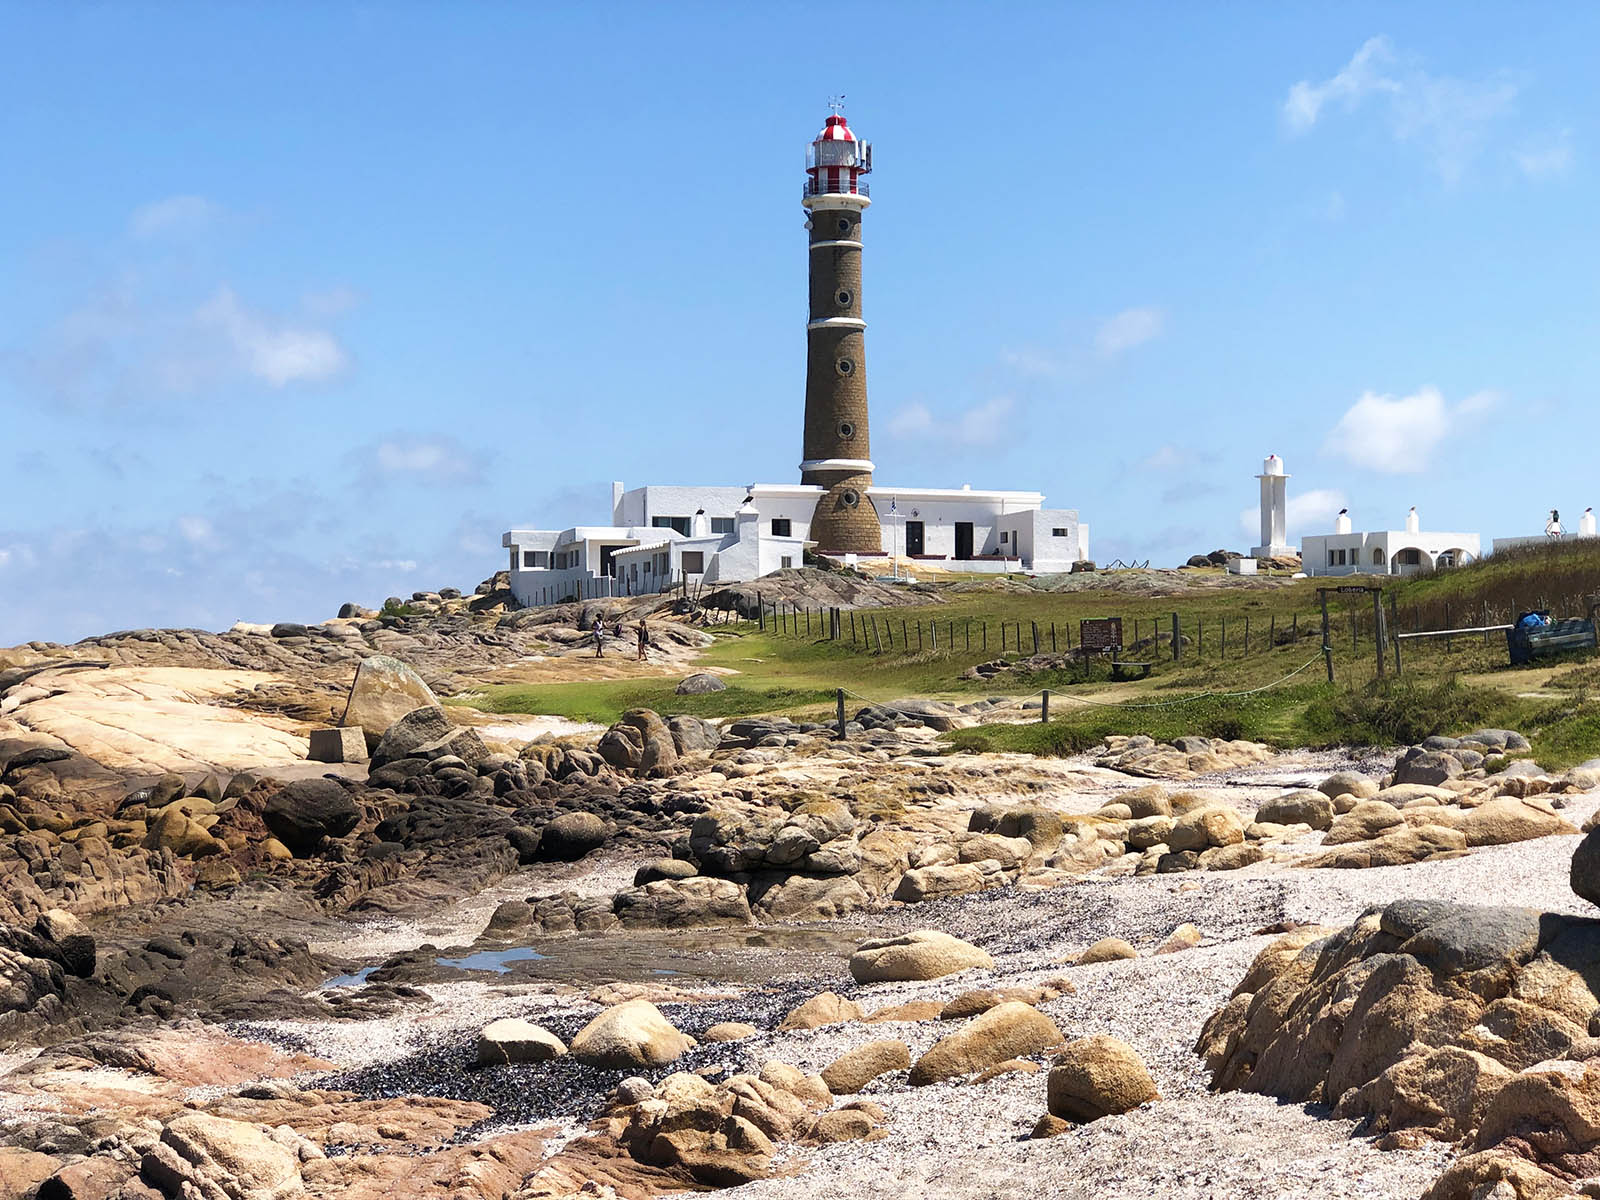 The lighthouse of Cabo Polonio. Credit: Carolina Valenzuela